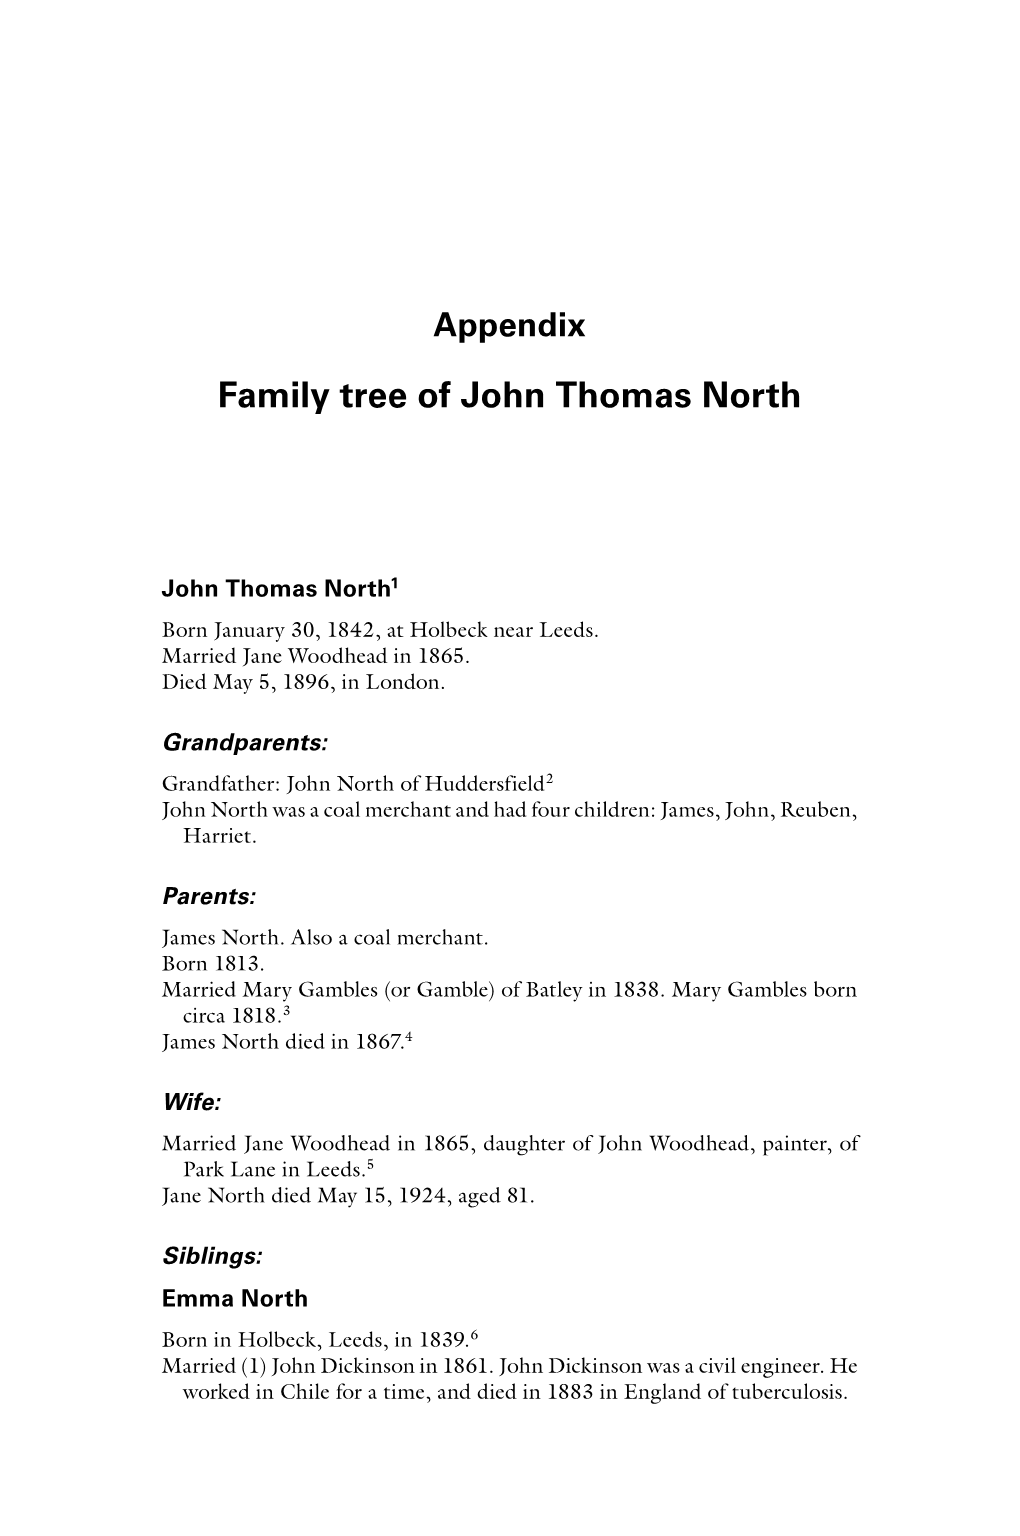 Family Tree of John Thomas North